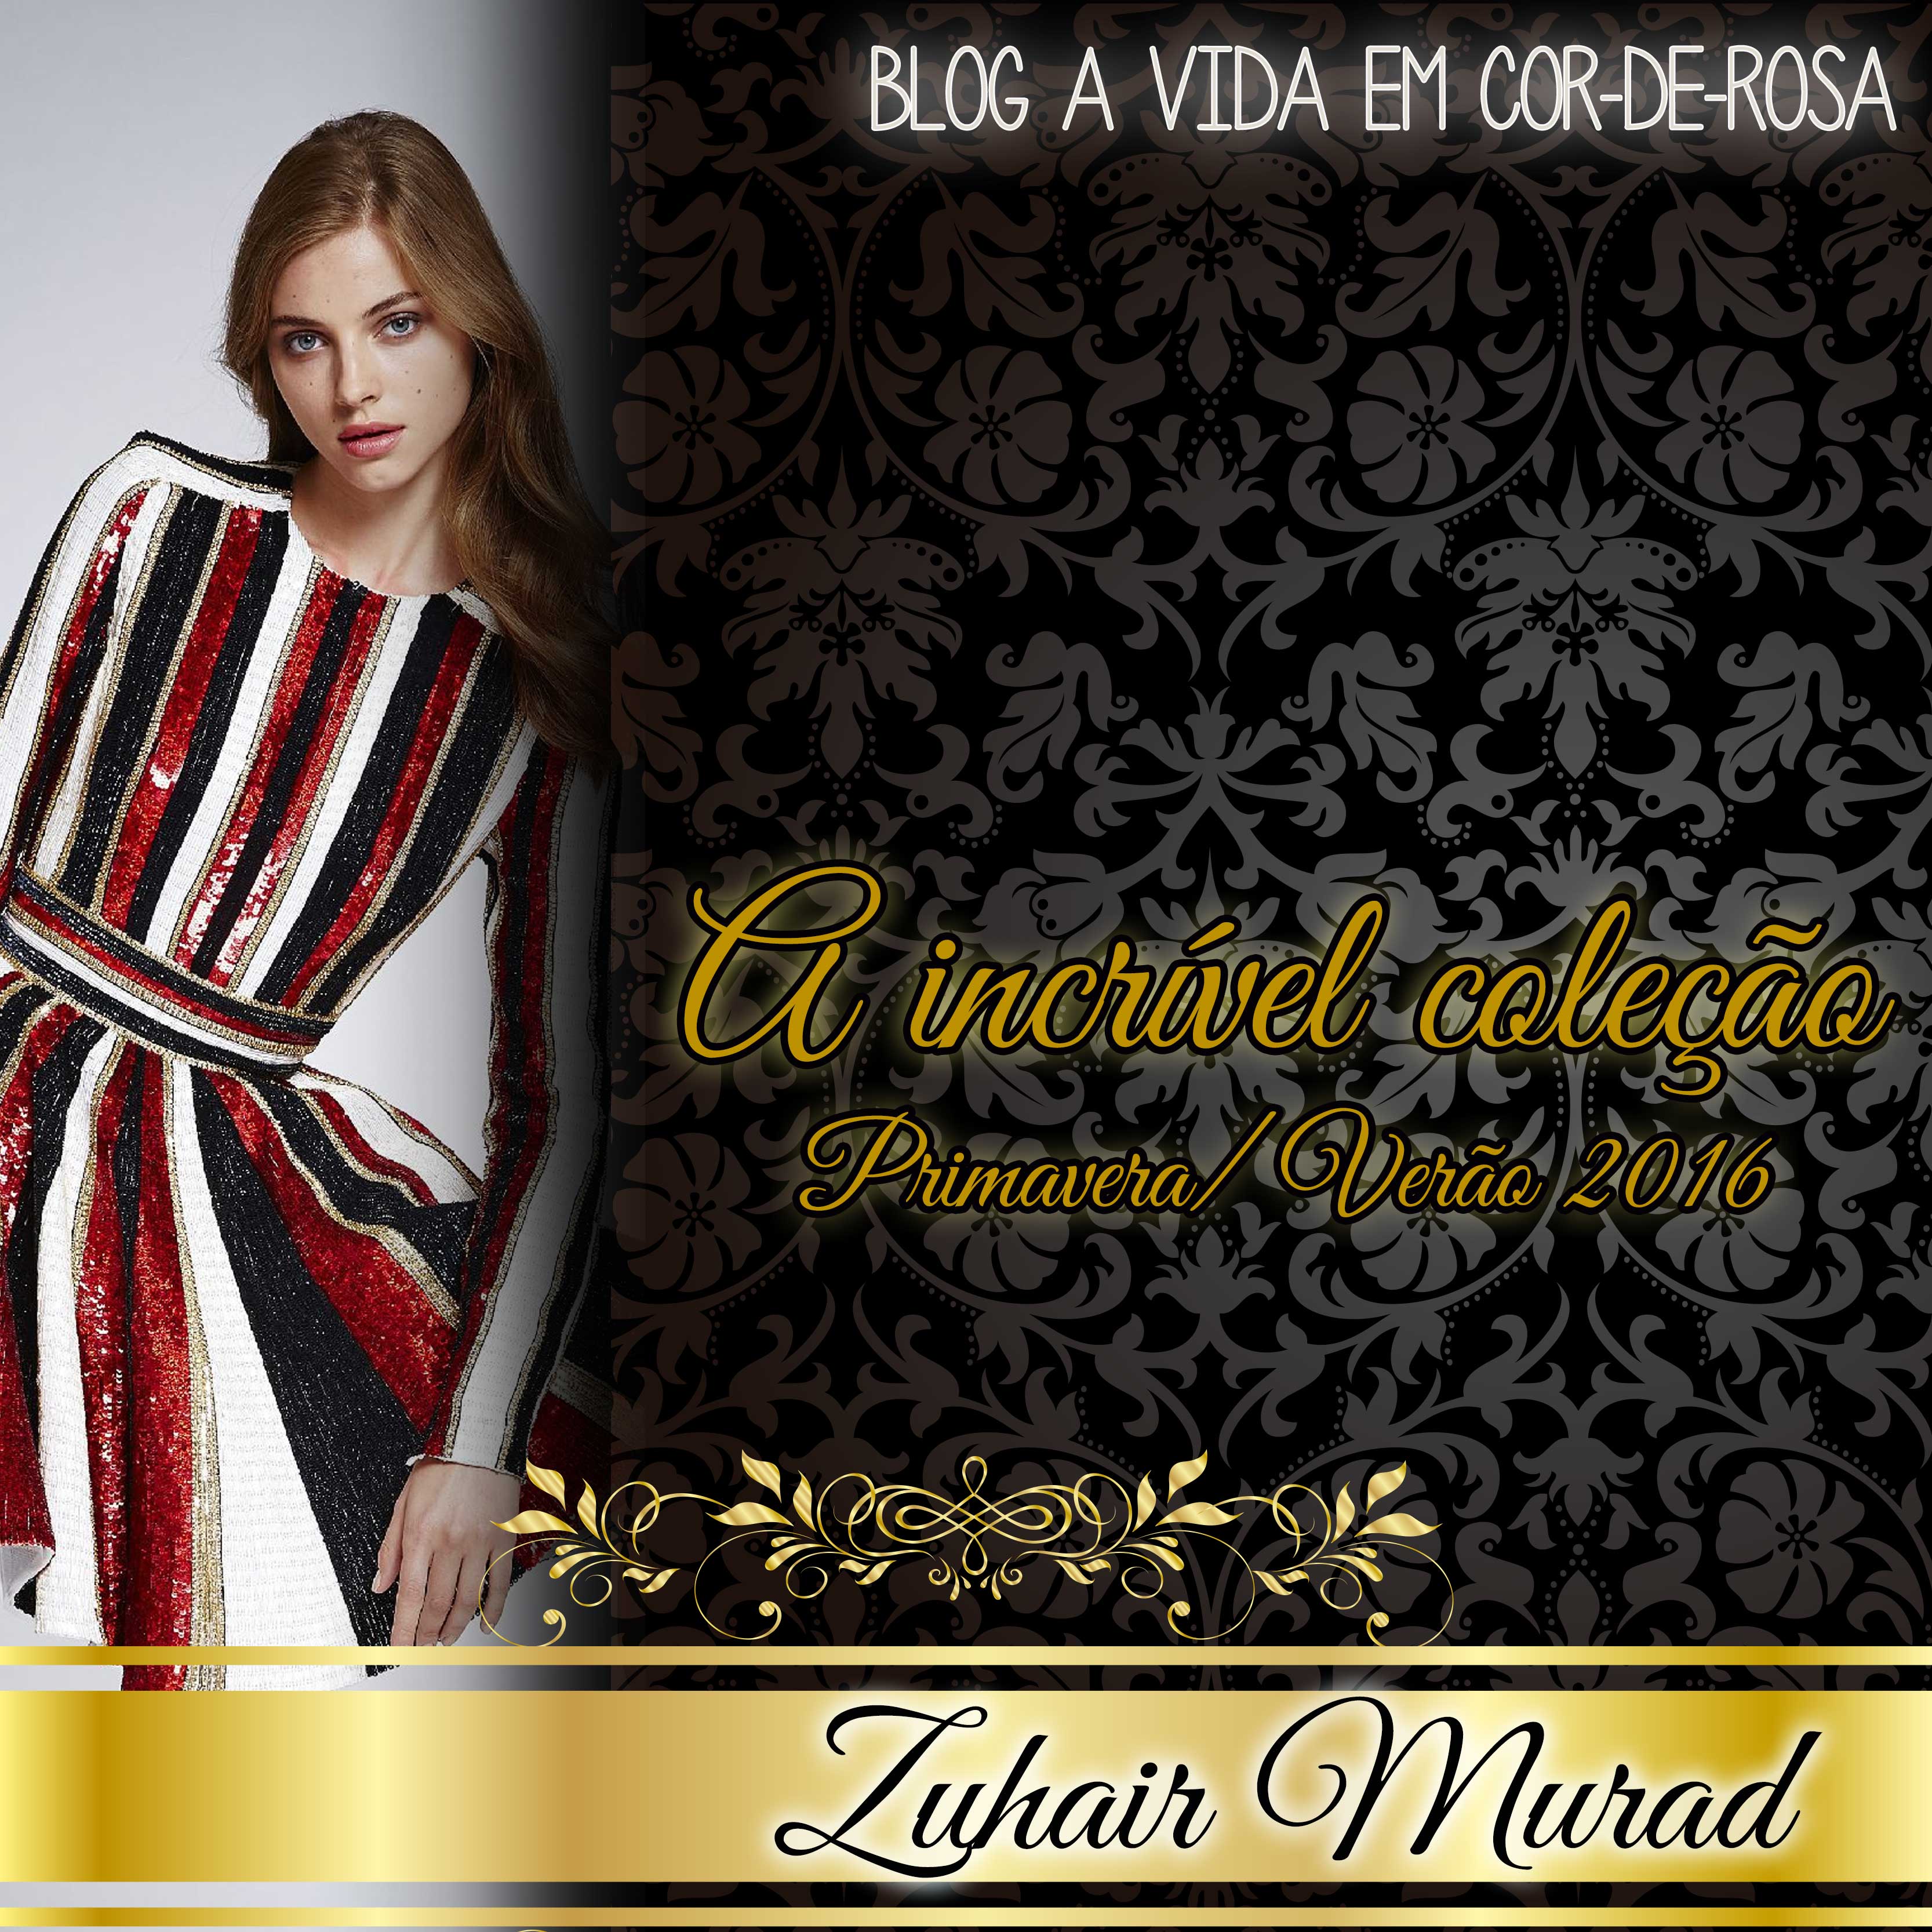 Blog "A Vida em Cor-de-Rosa" - Moda que inspira | Zuhair Murad Spring 2016